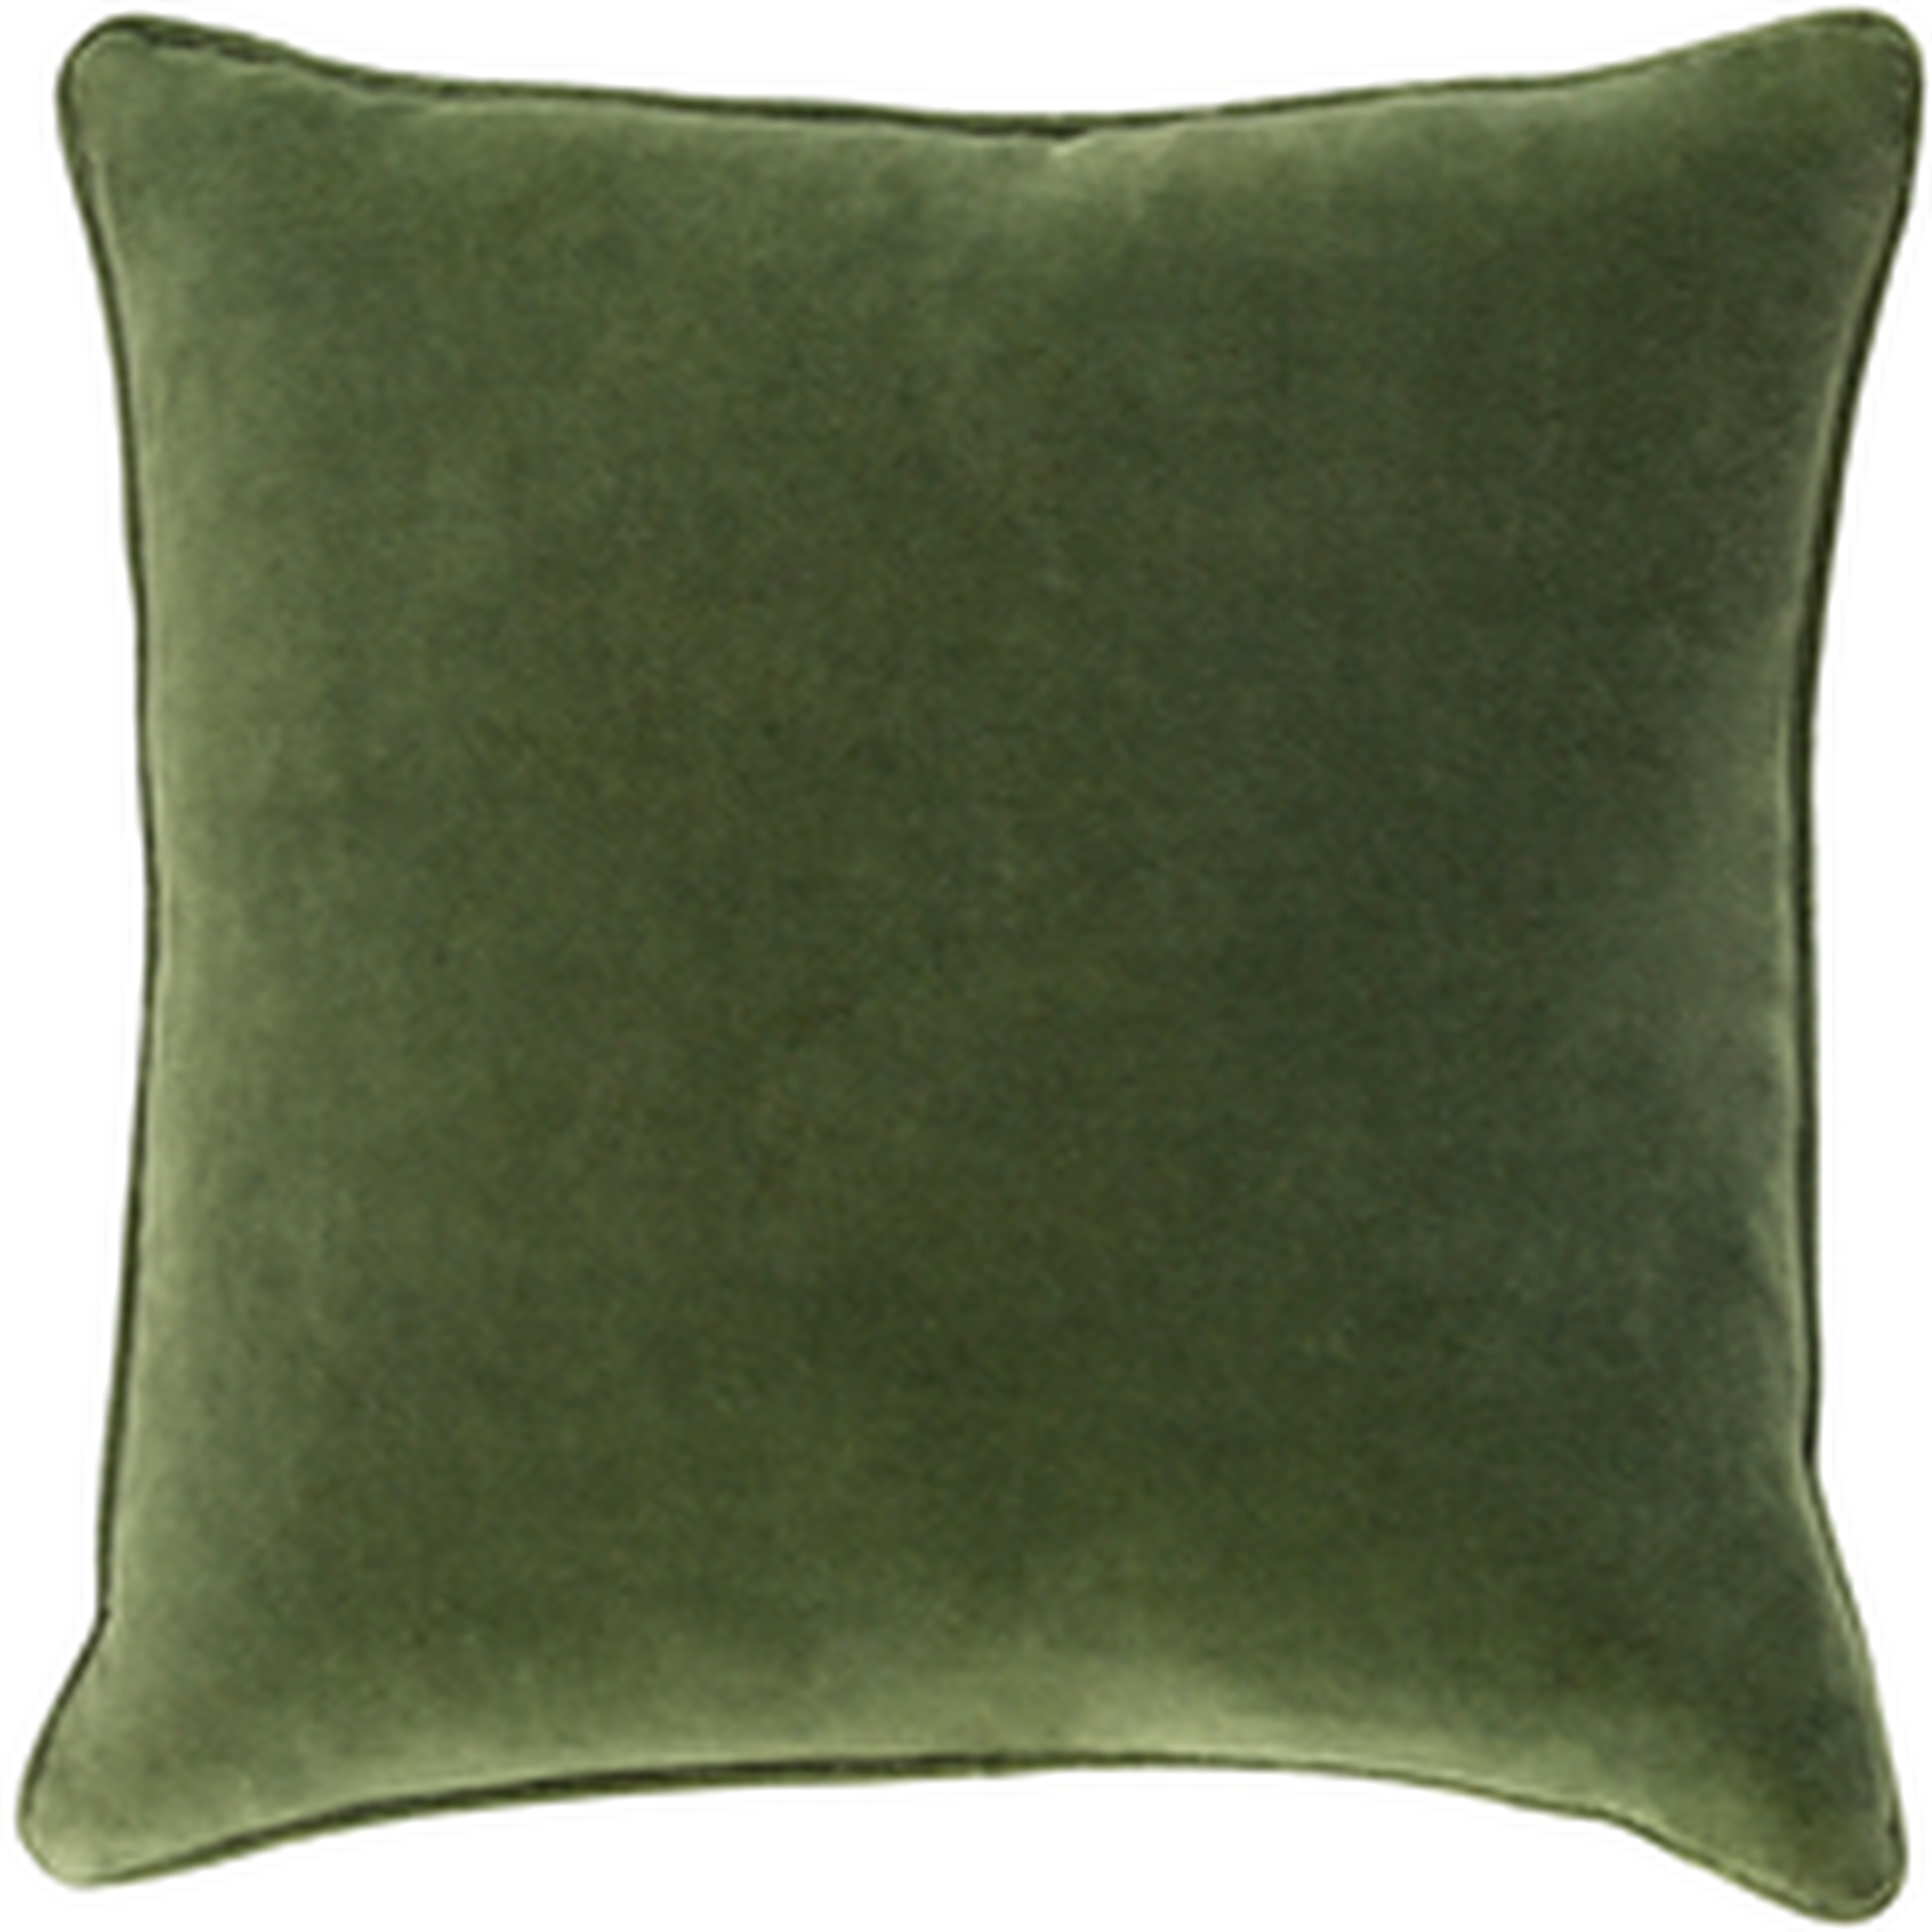 Safflower Pillow -green - 18" x 18" w/poly insert - Surya